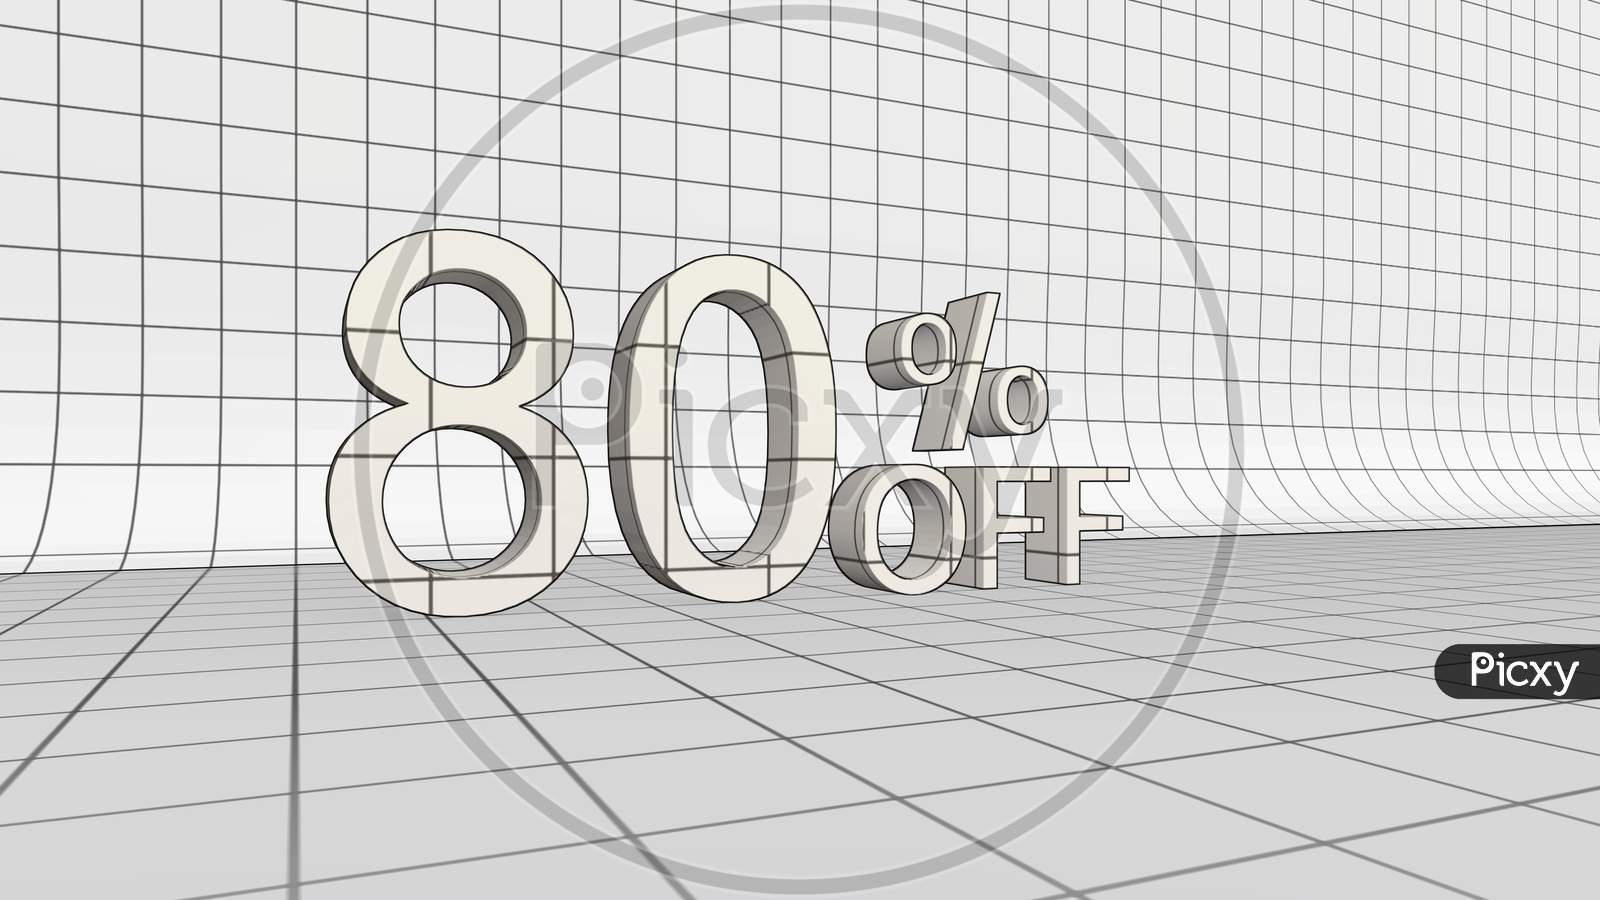 80 percent Discount 3D rendering